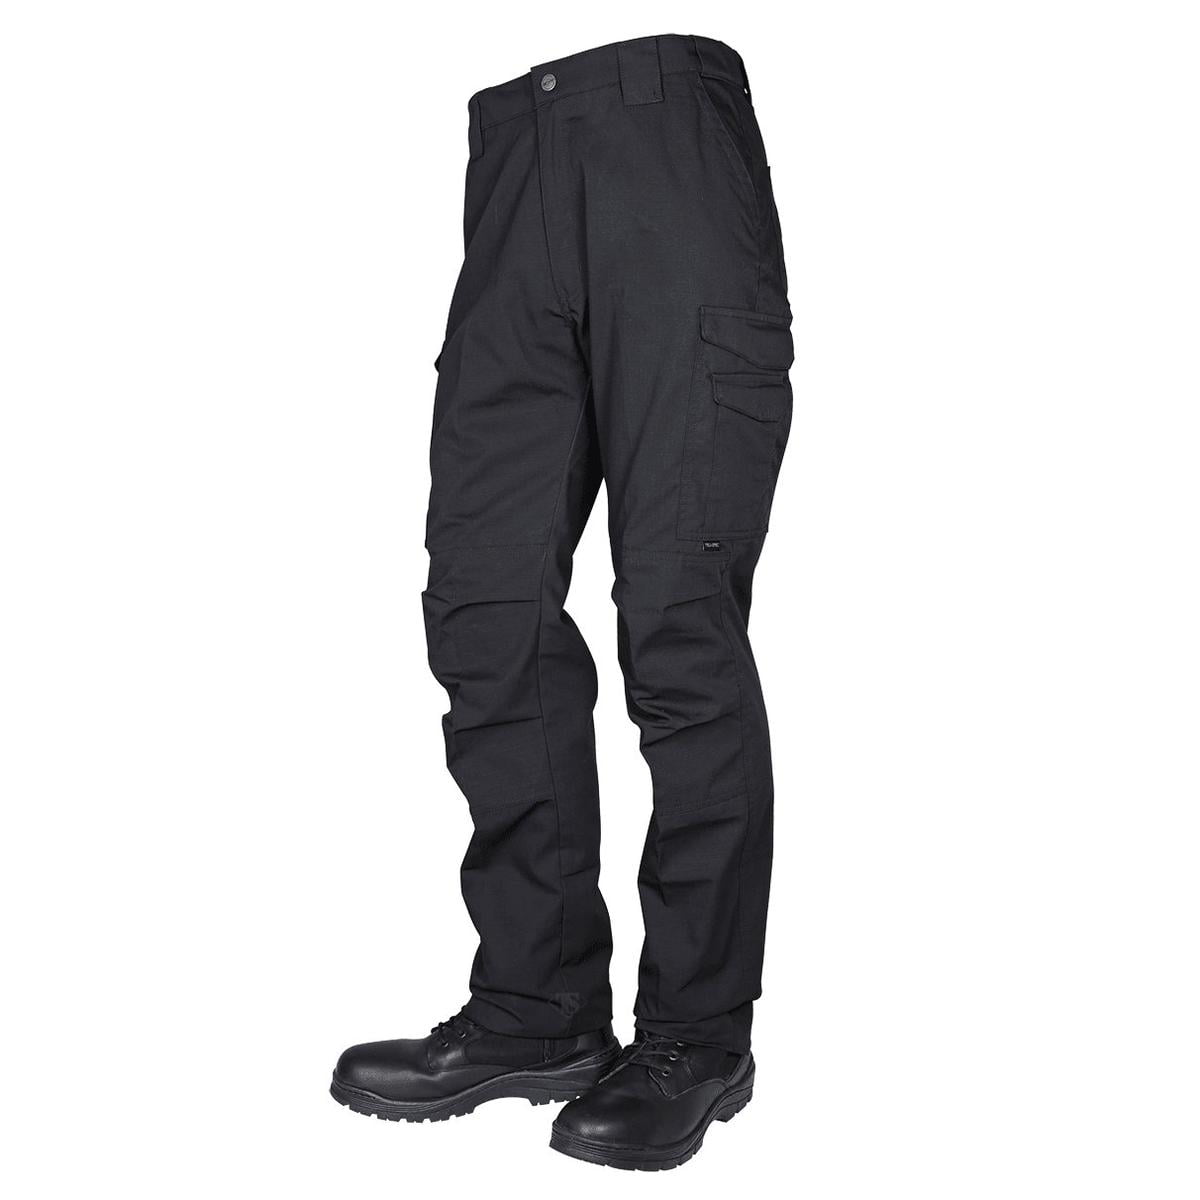 Tru-Spec 1462 24-7 Men's Guardian Tactical Cargo Pants, Black - Walmart.com